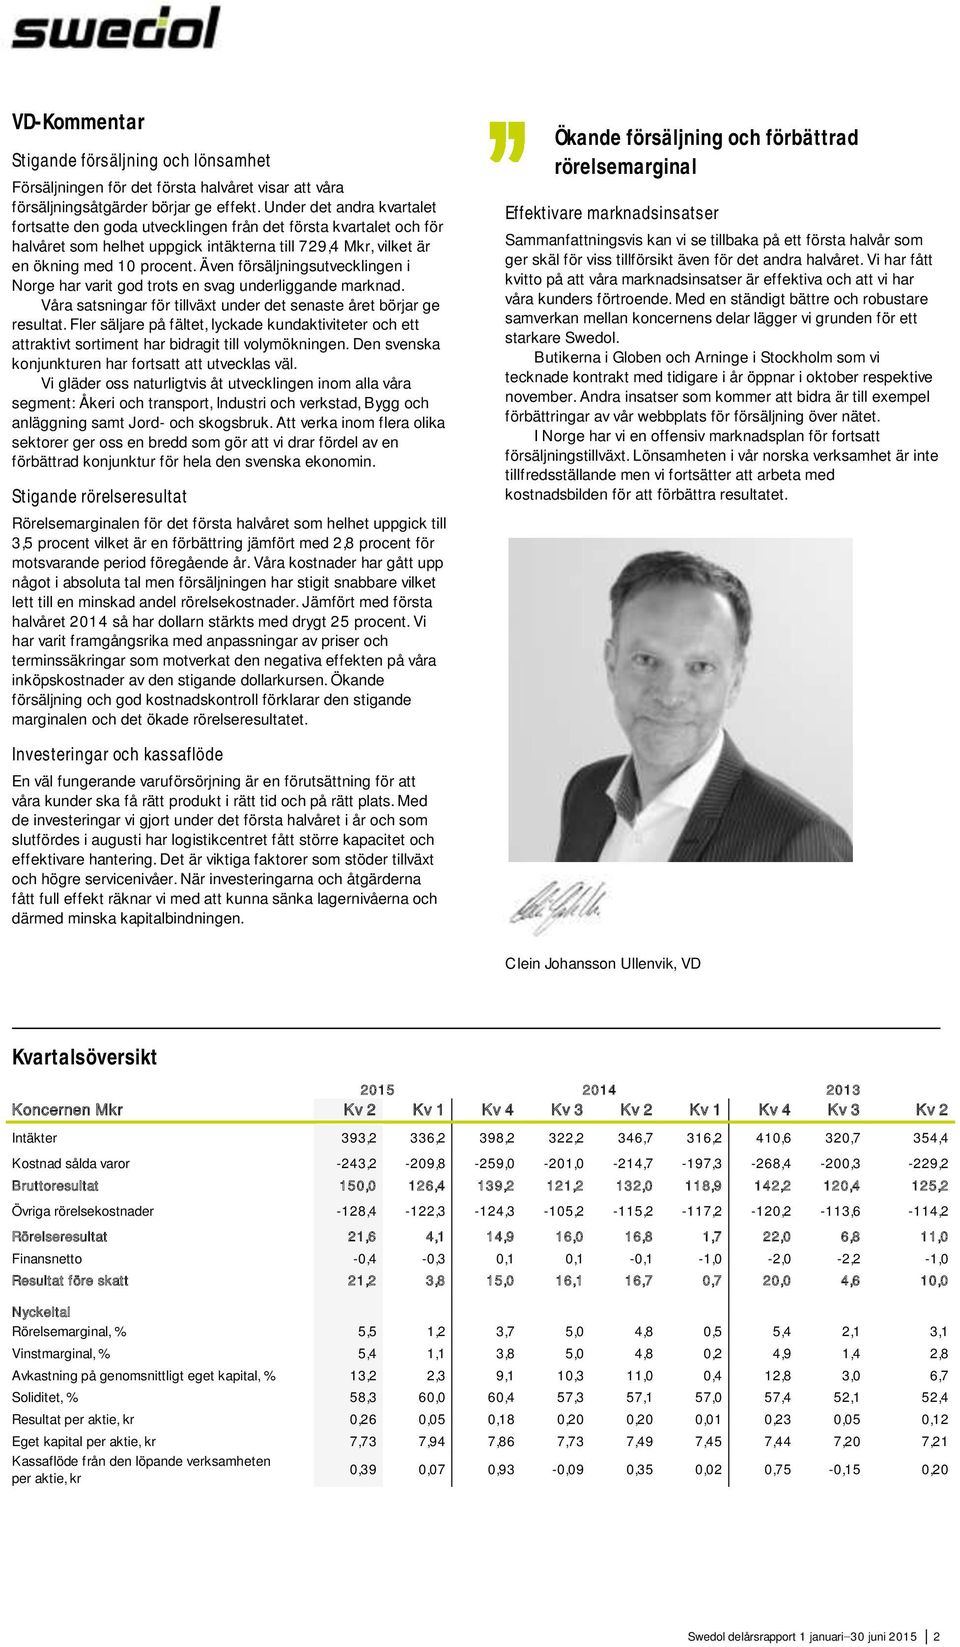 Även försäljningsutvecklingen i Norge har varit god trots en svag underliggande marknad. Våra satsningar för tillväxt under det senaste året börjar ge resultat.